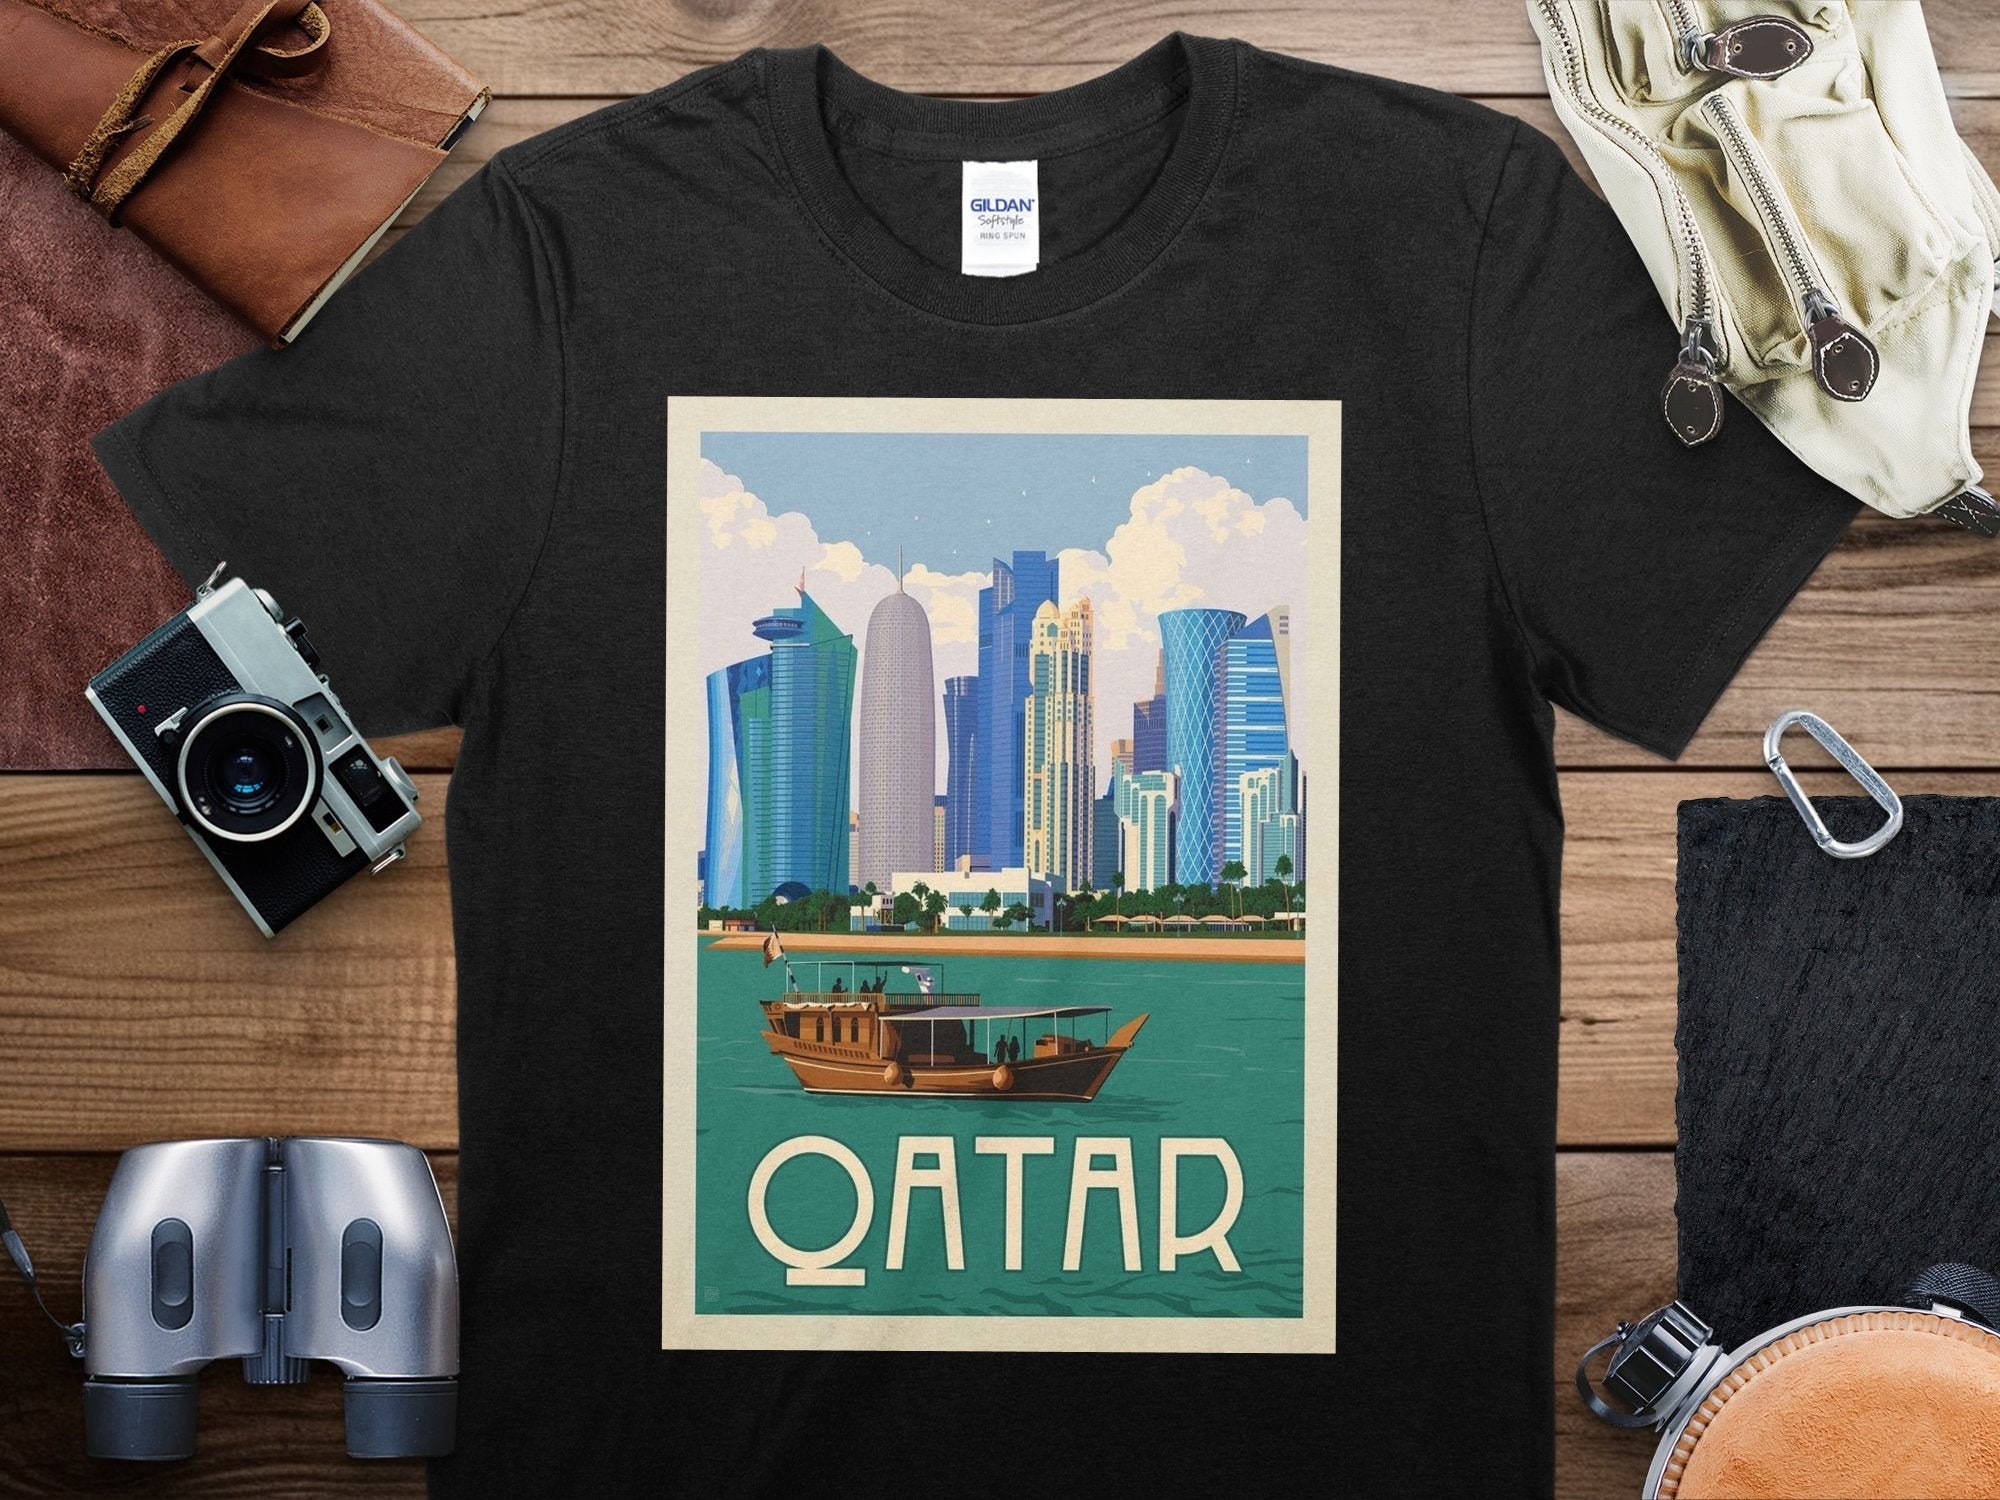 Buy Damart T-Shirts in Saudi, UAE, Kuwait and Qatar